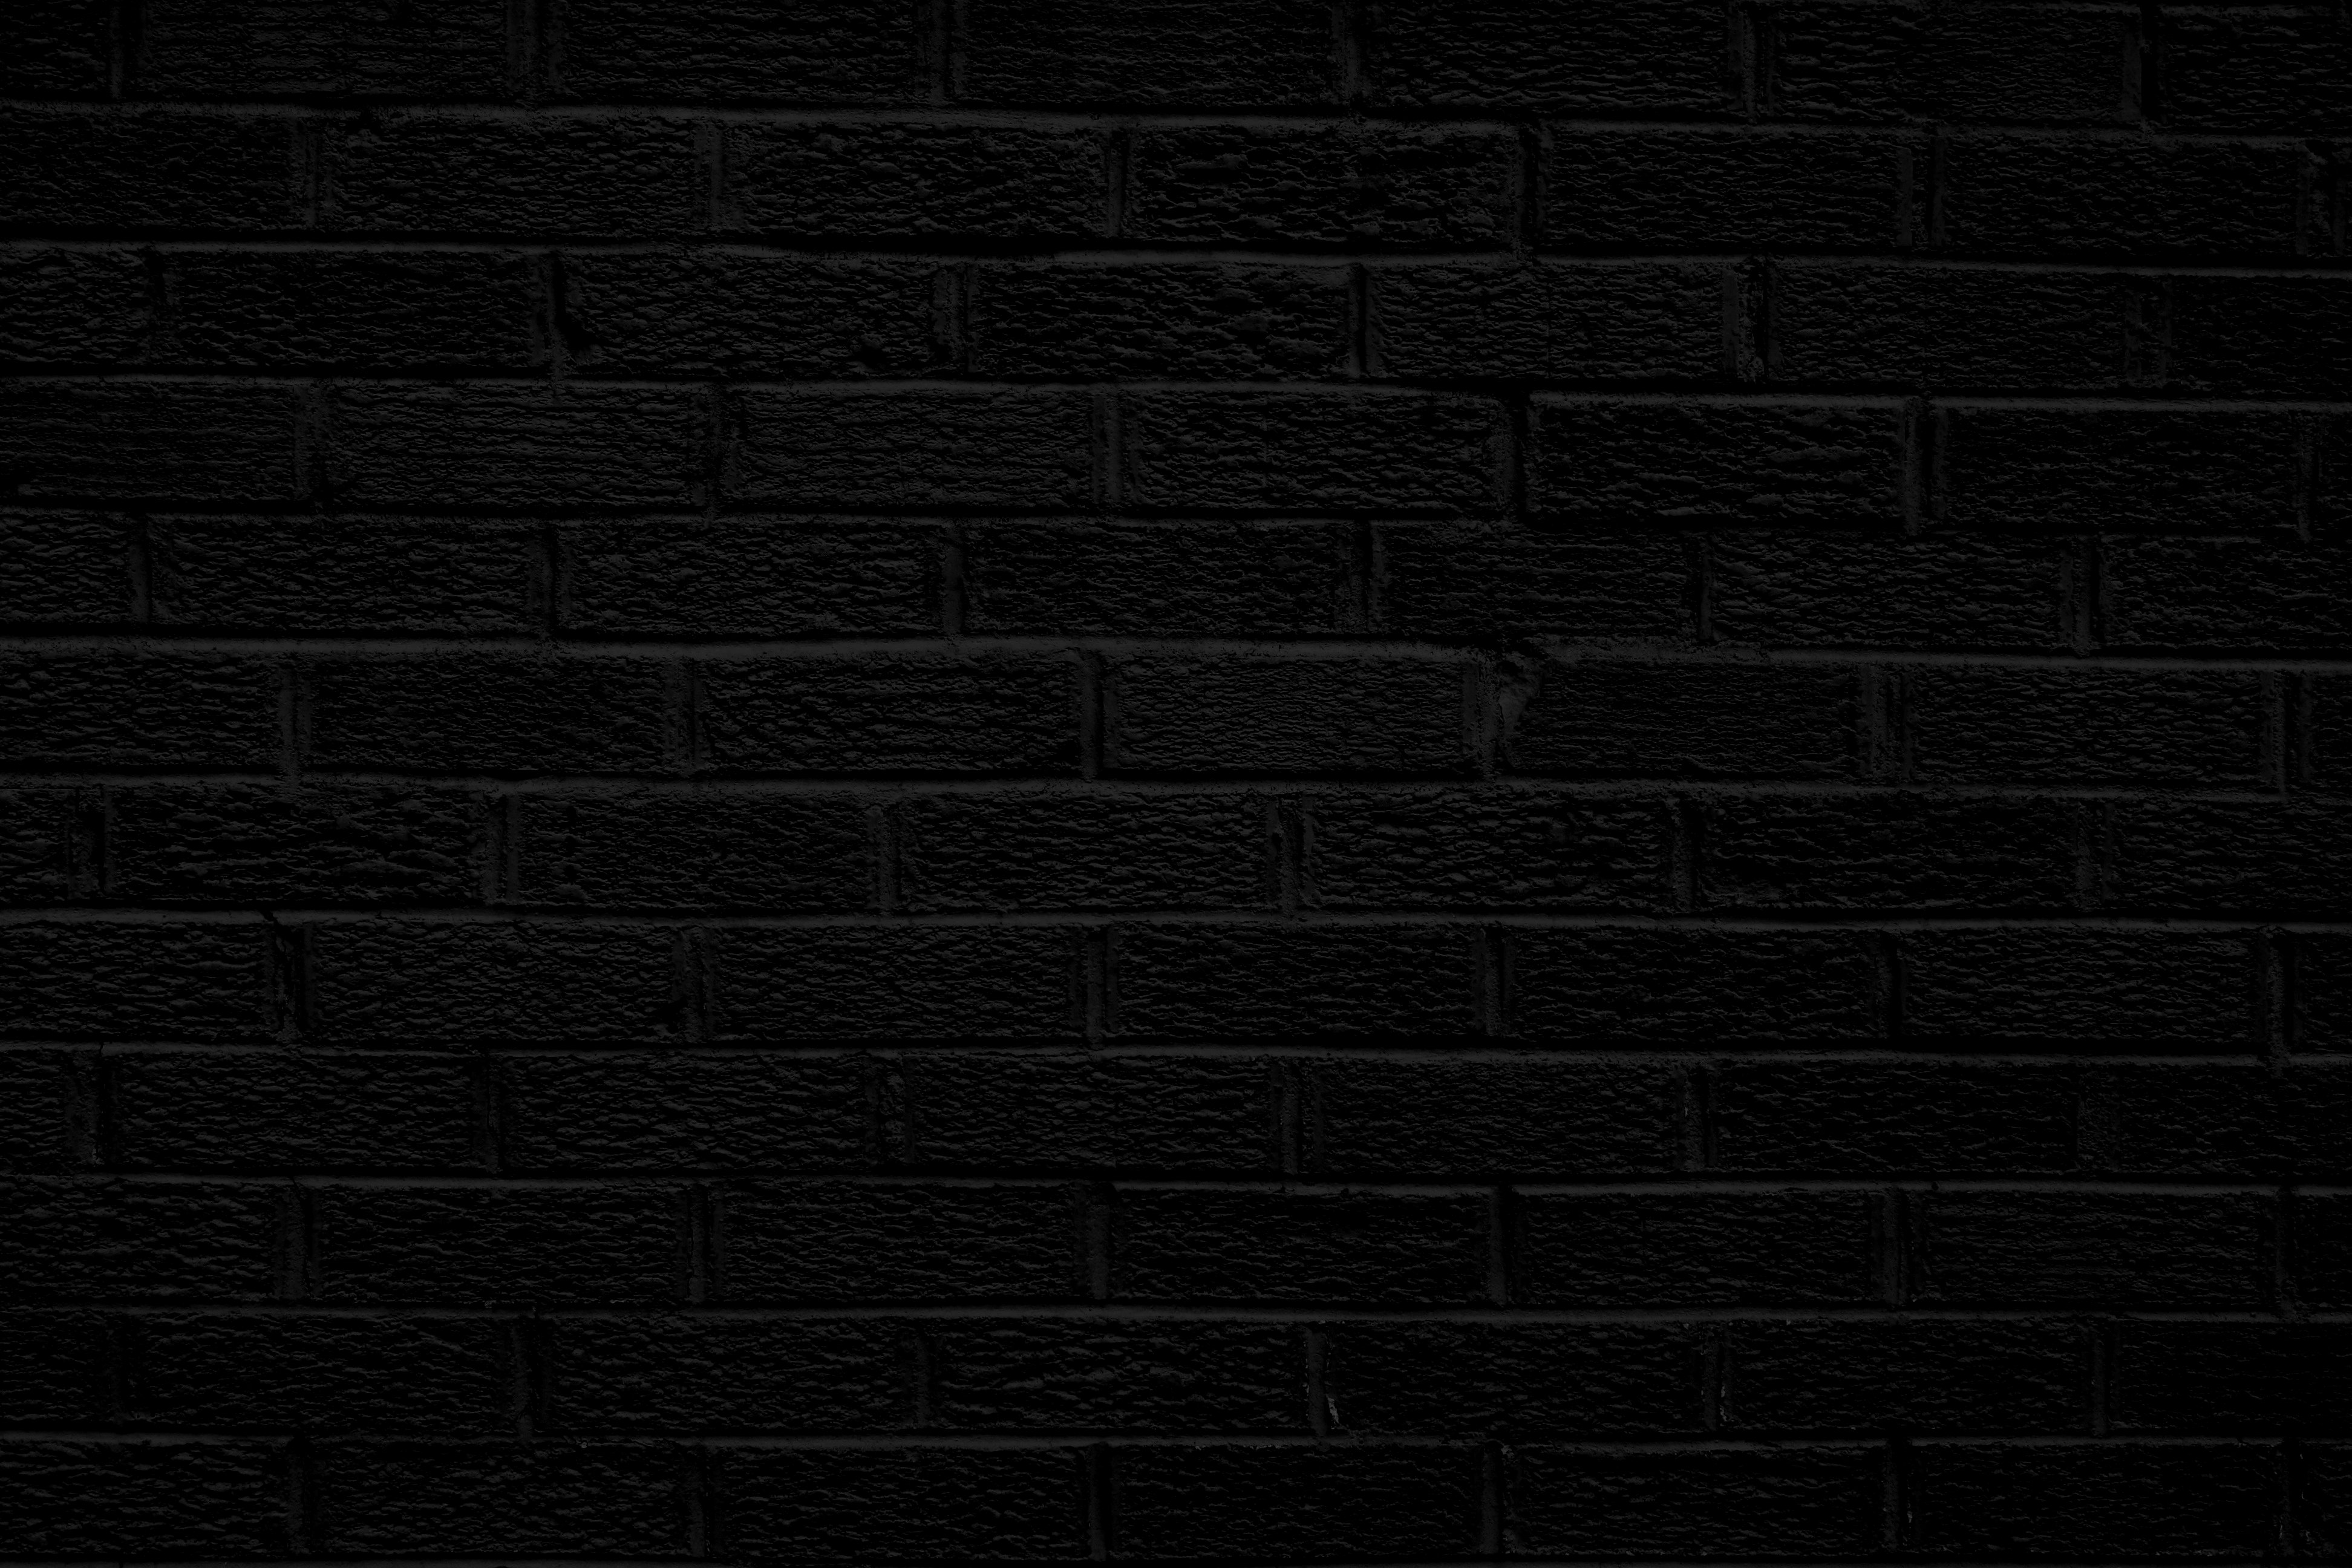 Black Brick Wall Texture Picture Photograph Photos Public